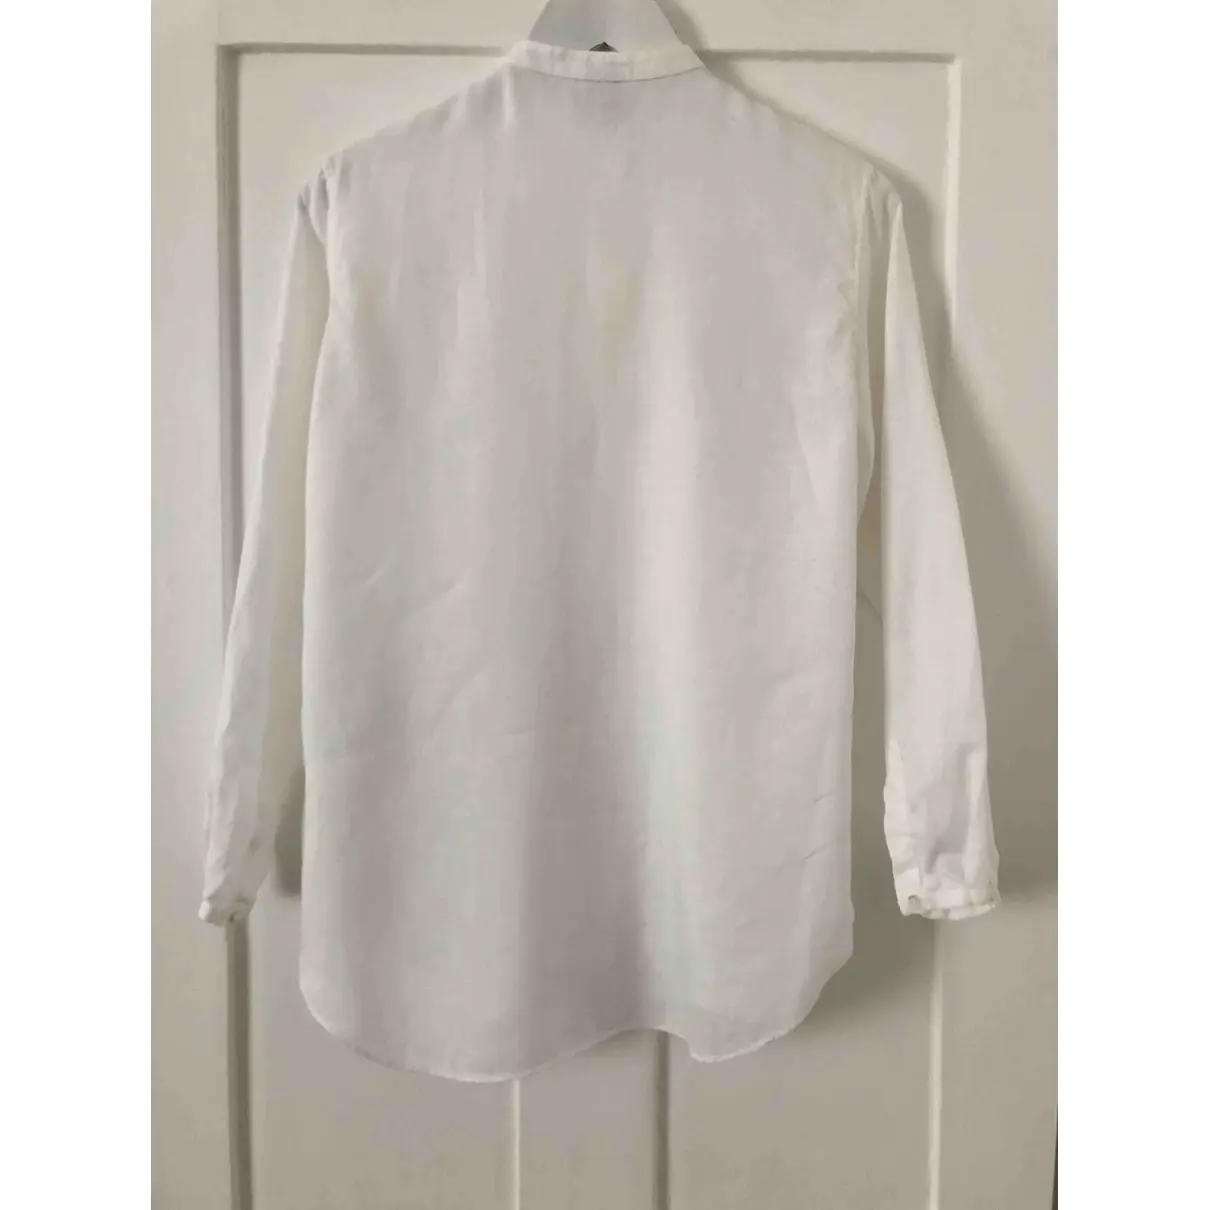 Buy Aspesi Linen blouse online